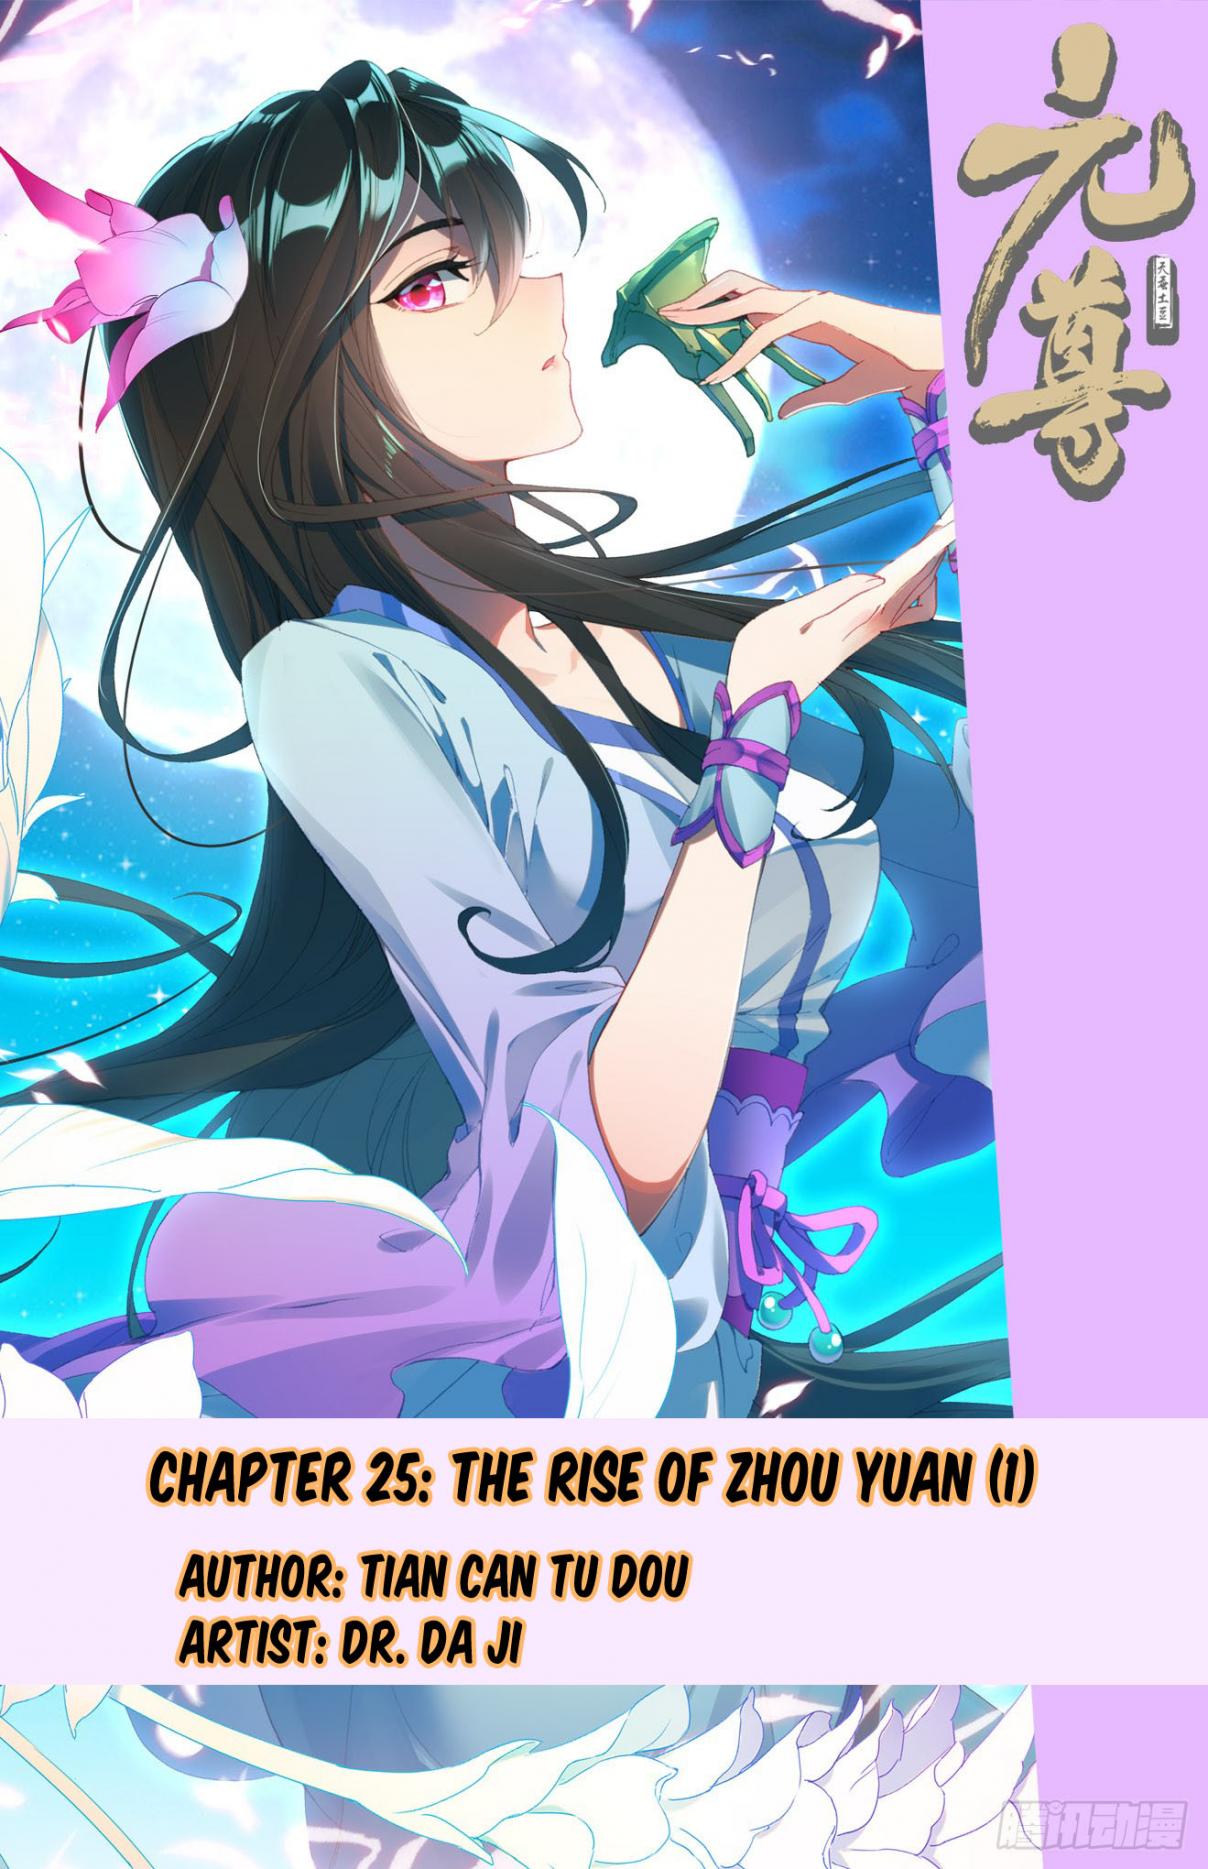 Yuan Zun Ch. 25 The Rise of Zhou Yuan (Part 1)